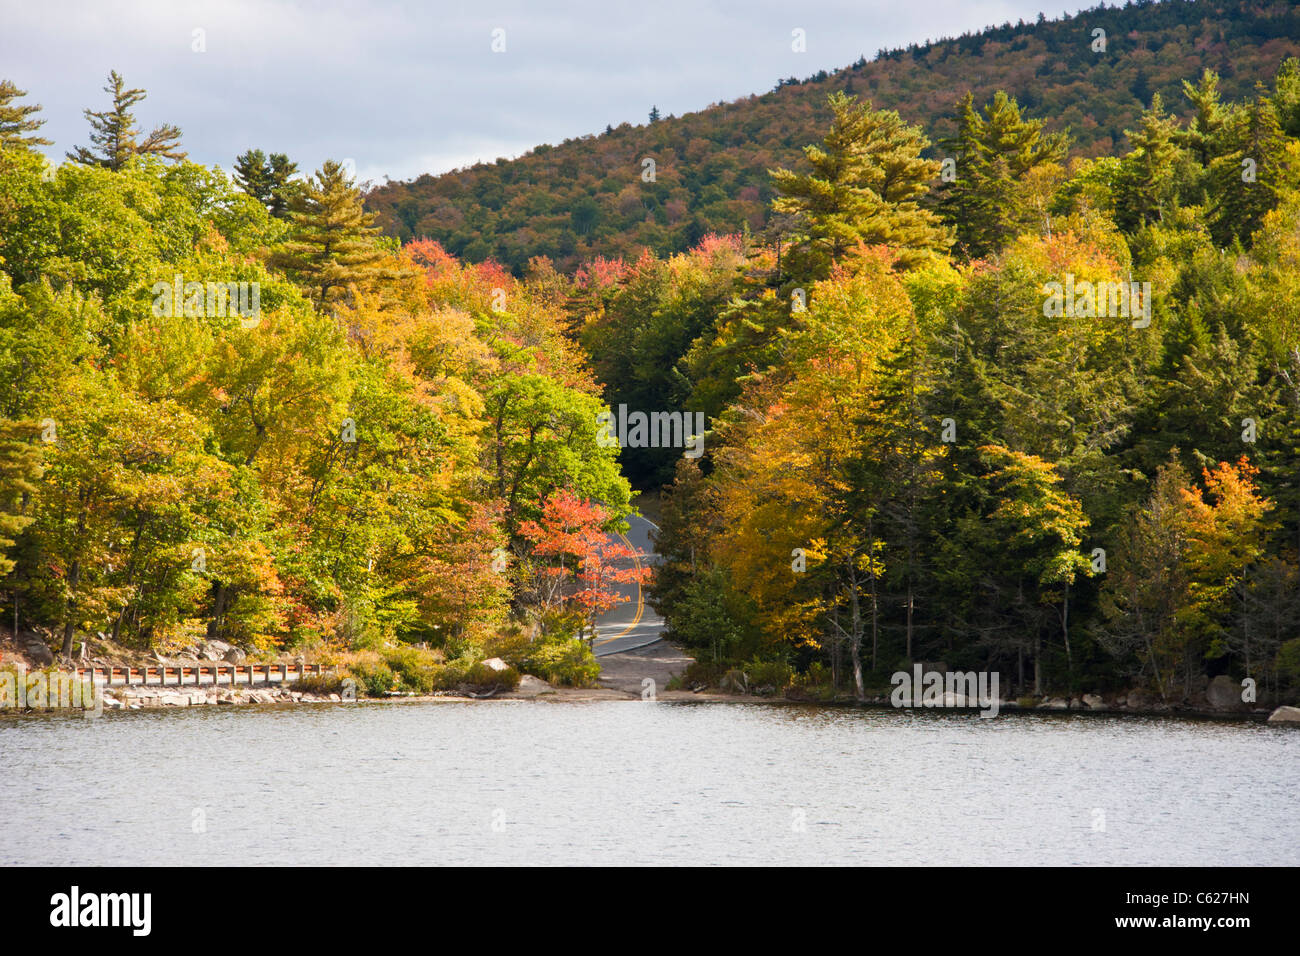 La pittoresque route US 1 au nord de Bar Harbor à Lubec, Maine, capture les couleurs incroyables du Maine au début de l'automne. Banque D'Images